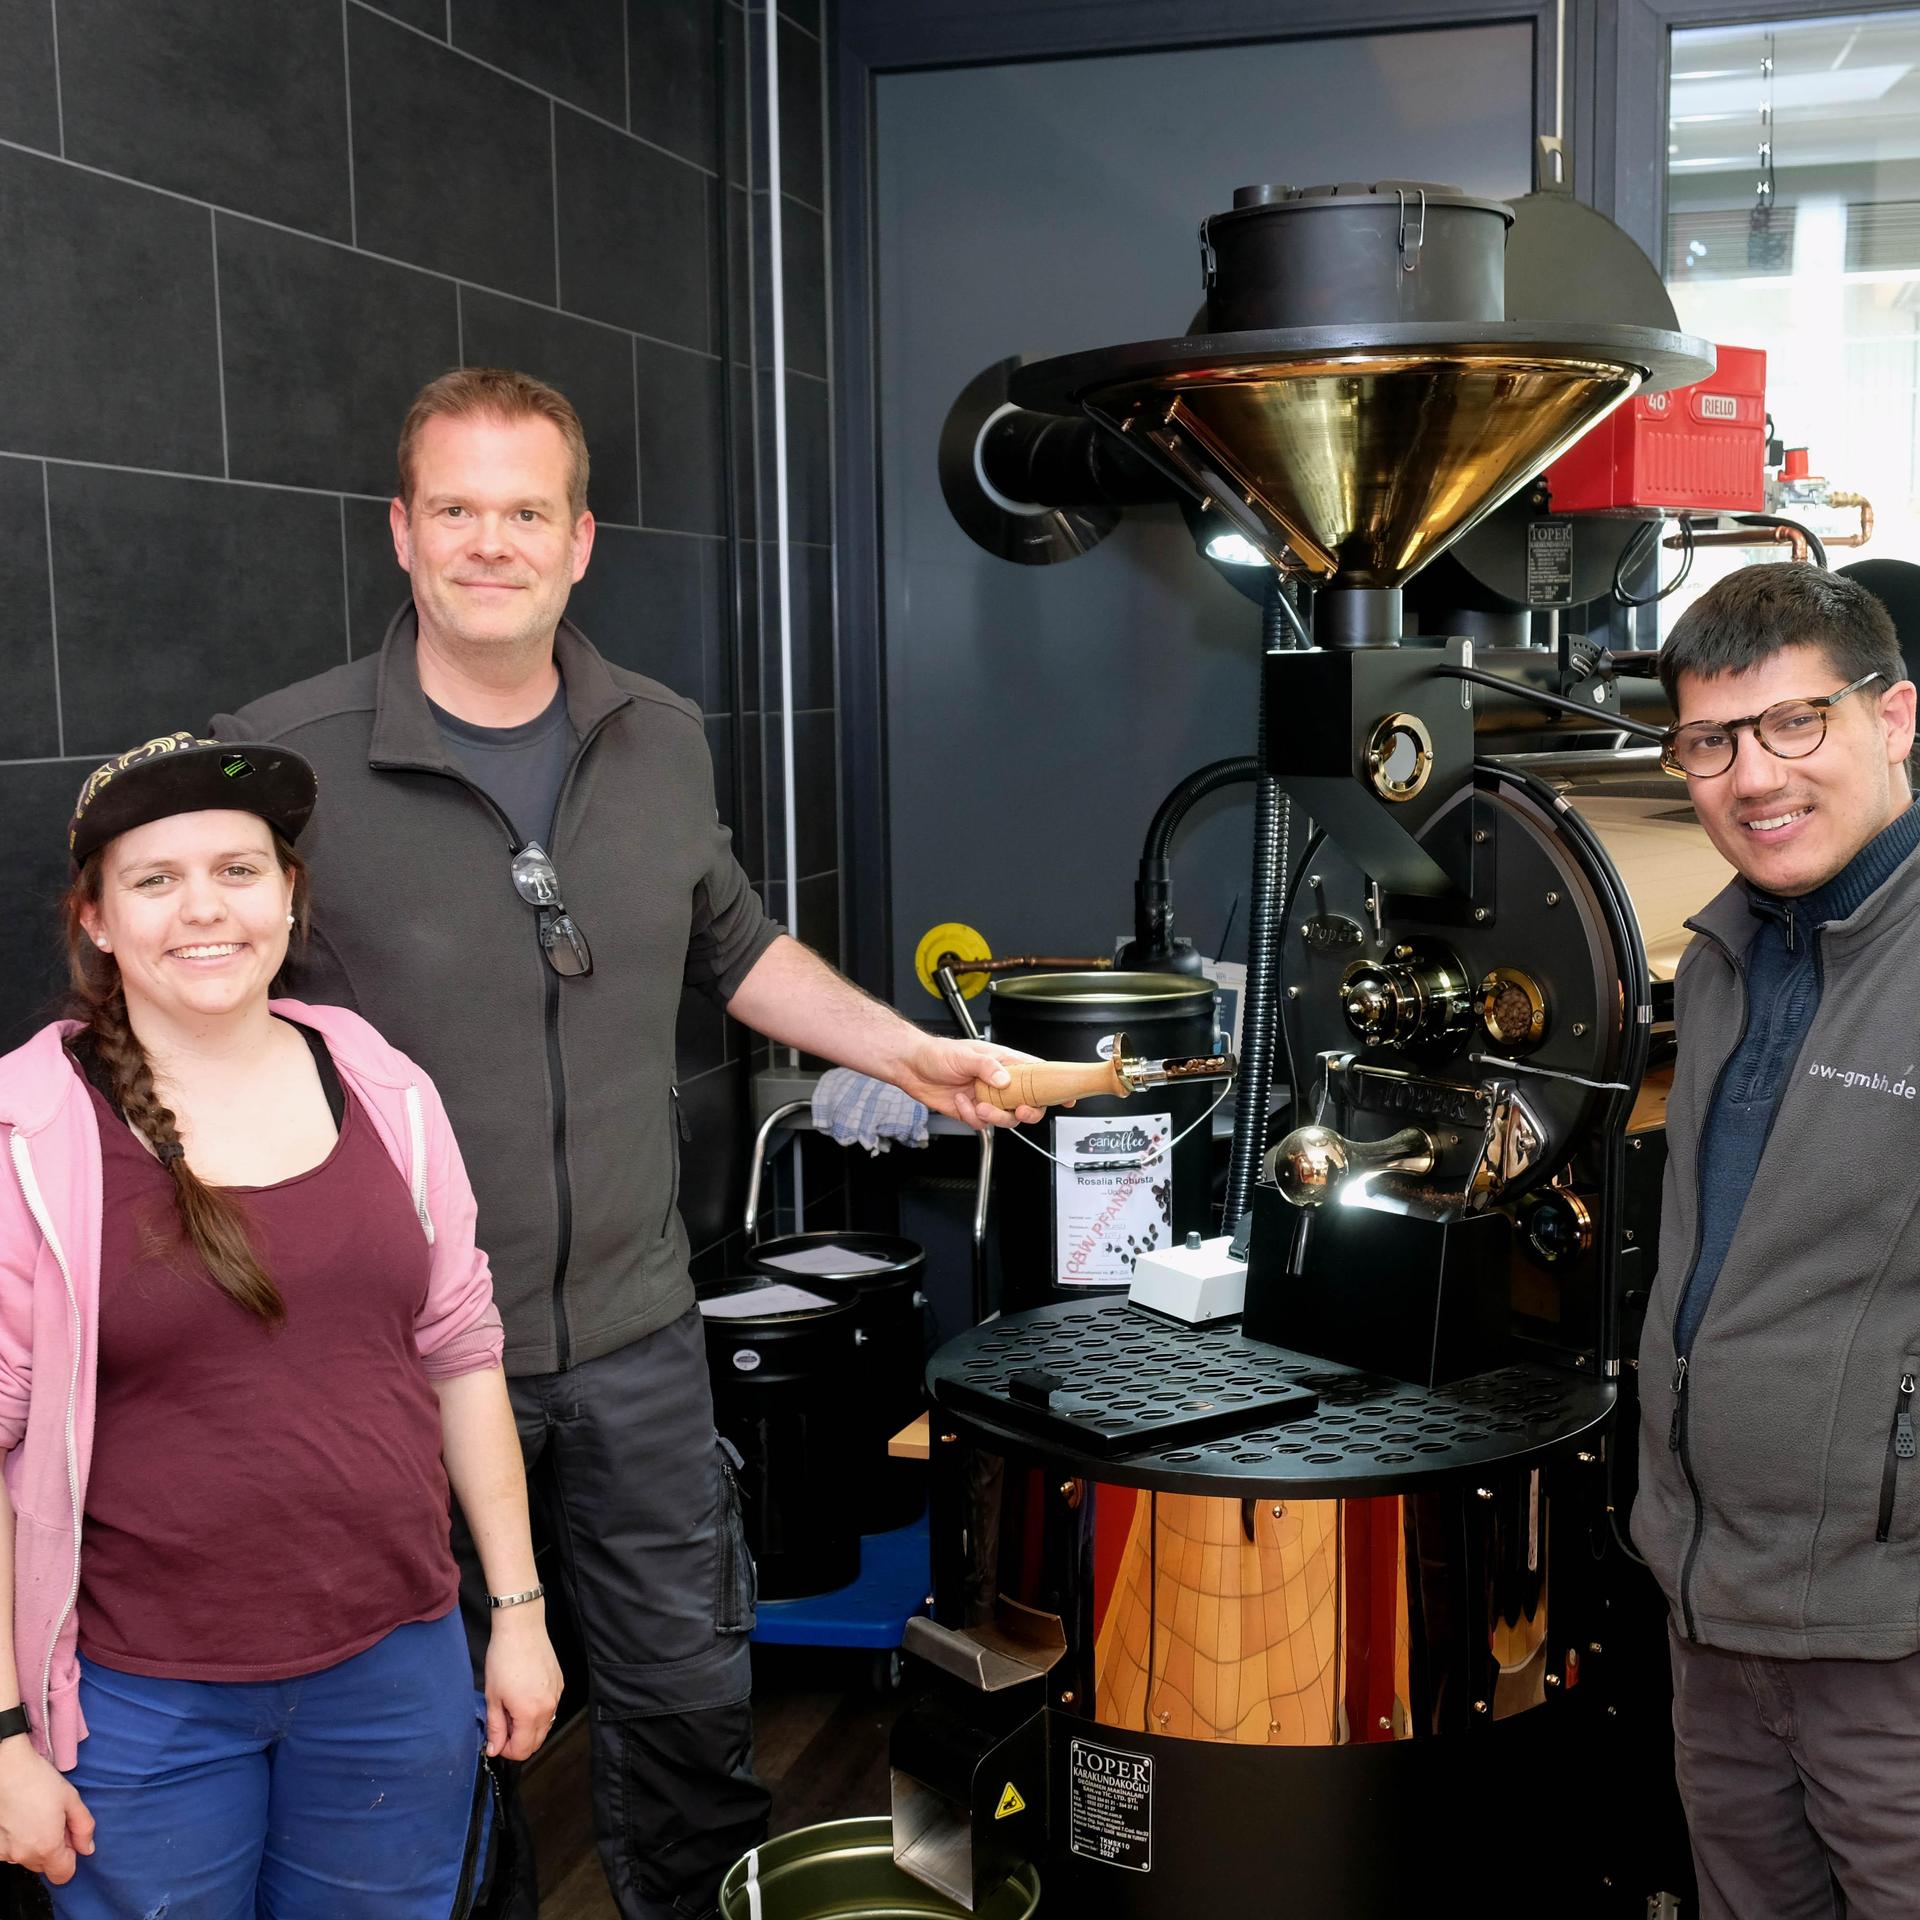 Der Kaffee ist bald fertig: Tobias Fink ist bei der Caritas-Werkstatt Imgenbroich zuständig fürs Kaffeerösten. Mara Offermann und Jannick Mohr (re.), die beide in der Werkstatt beschäftigt sind, unterstützen den Vorgang.